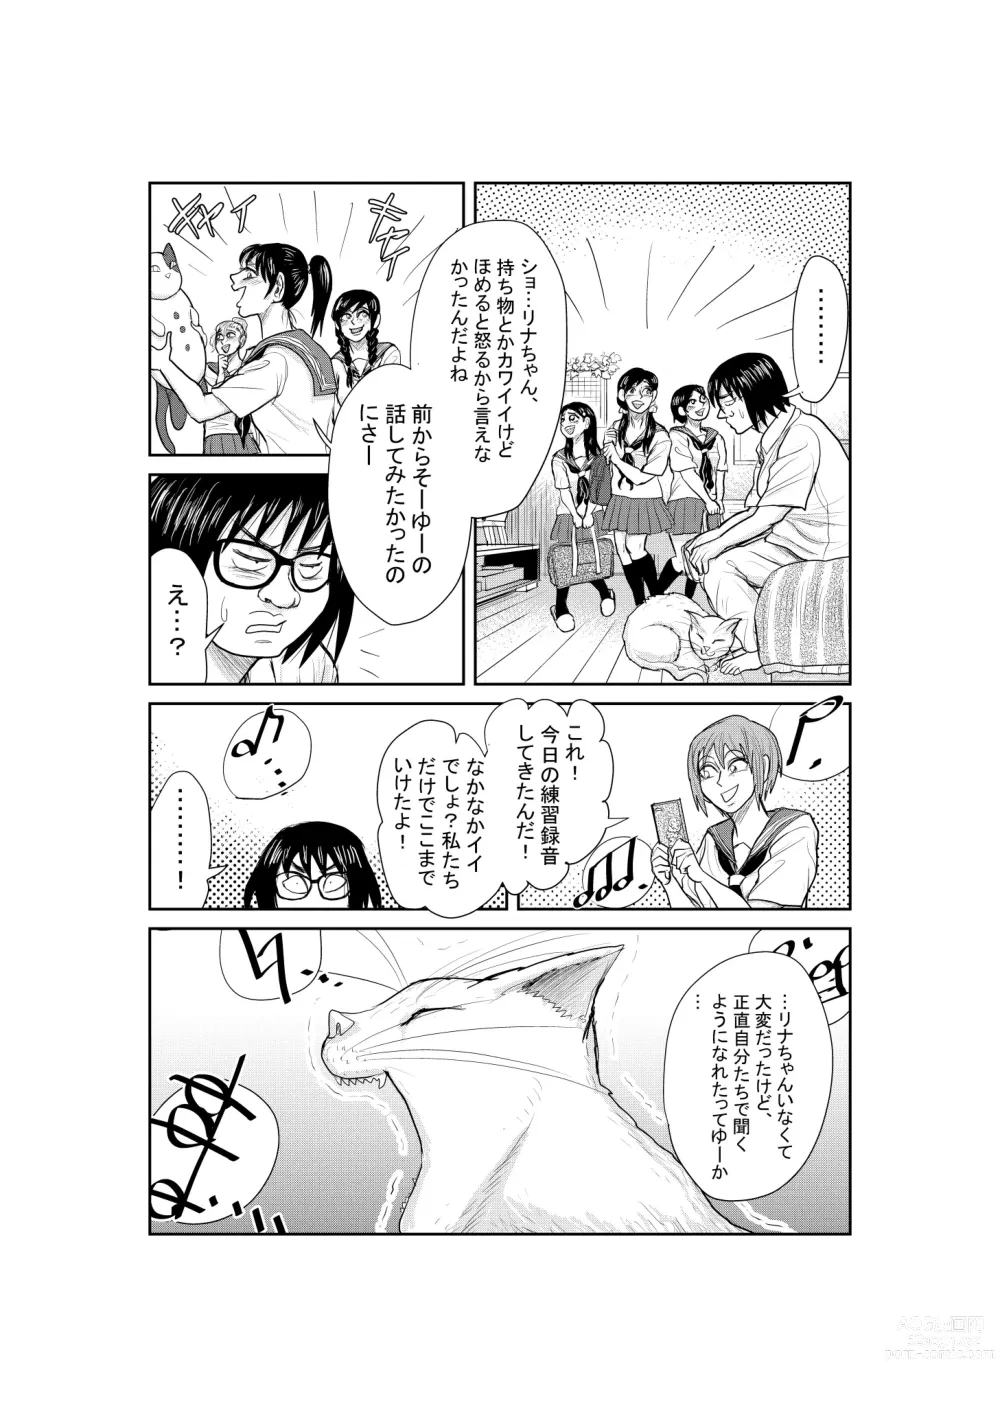 Page 49 of doujinshi Neko